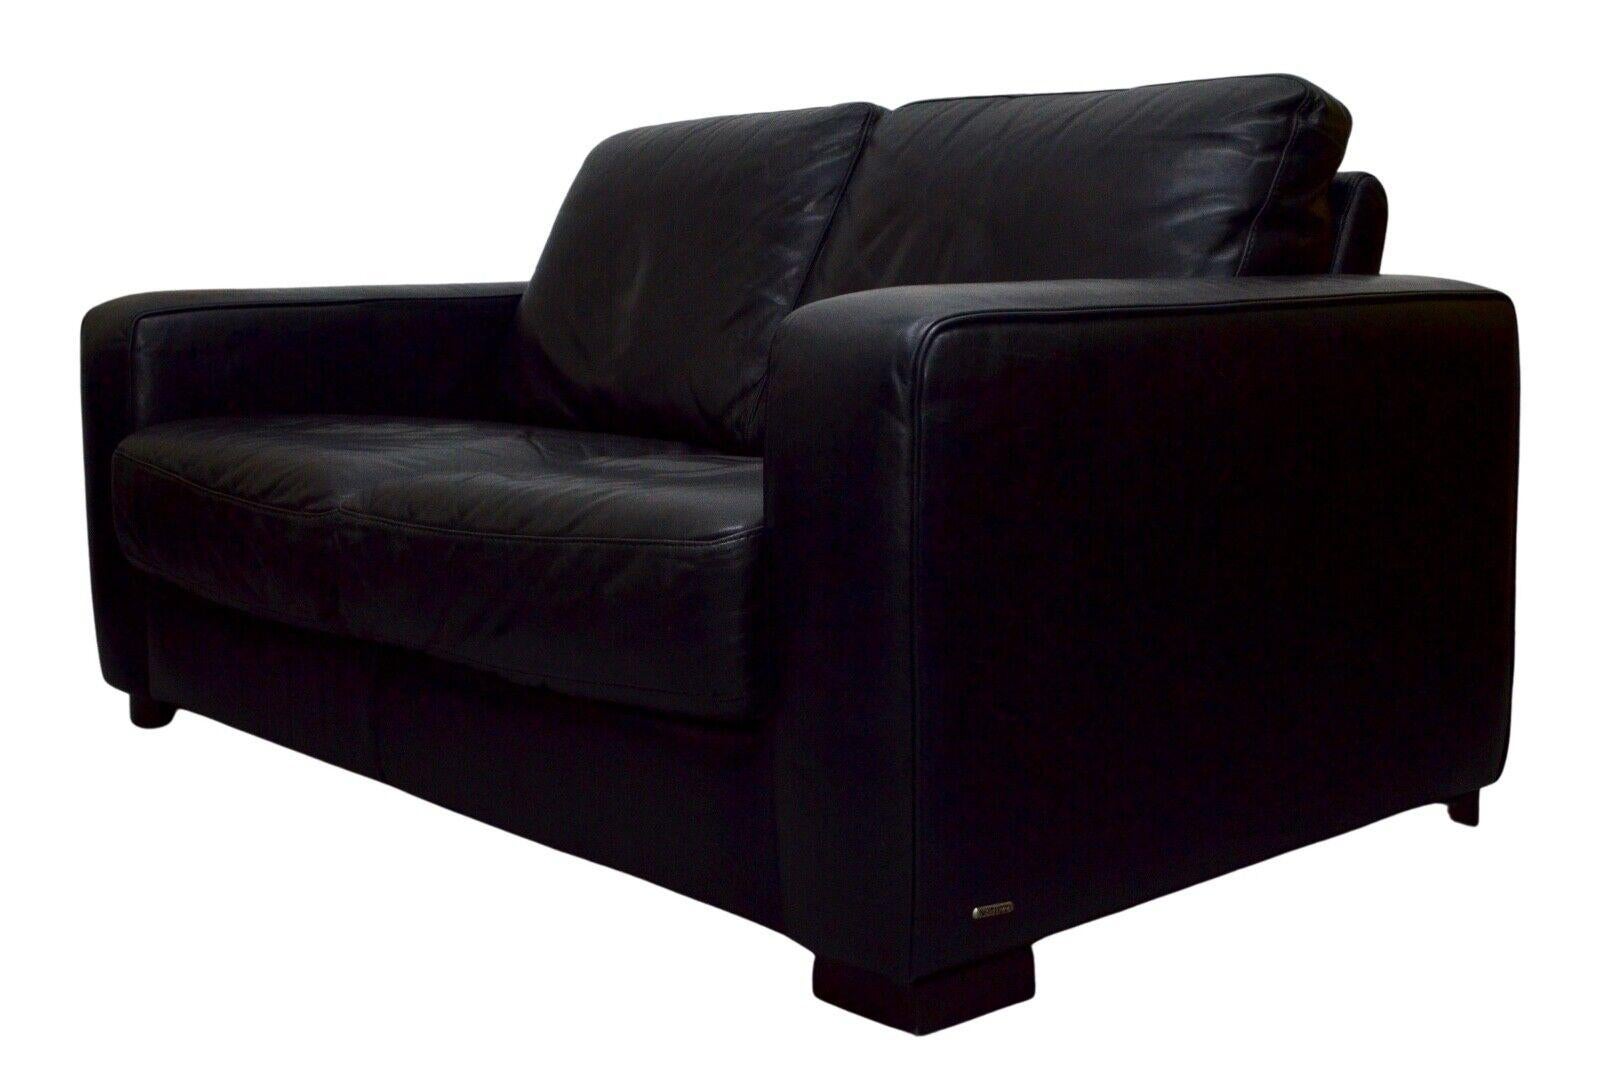 Wir freuen uns, dieses moderne Natuzzi Zweisitzer-Sofa aus schwarzem Leder zum Verkauf anbieten zu können. Dieses kompakte Sofa mit seinen stilvollen Details ist auch für kleine Wohnungen ideal. Er ist aus hochwertigem italienischem Vollnarbenleder